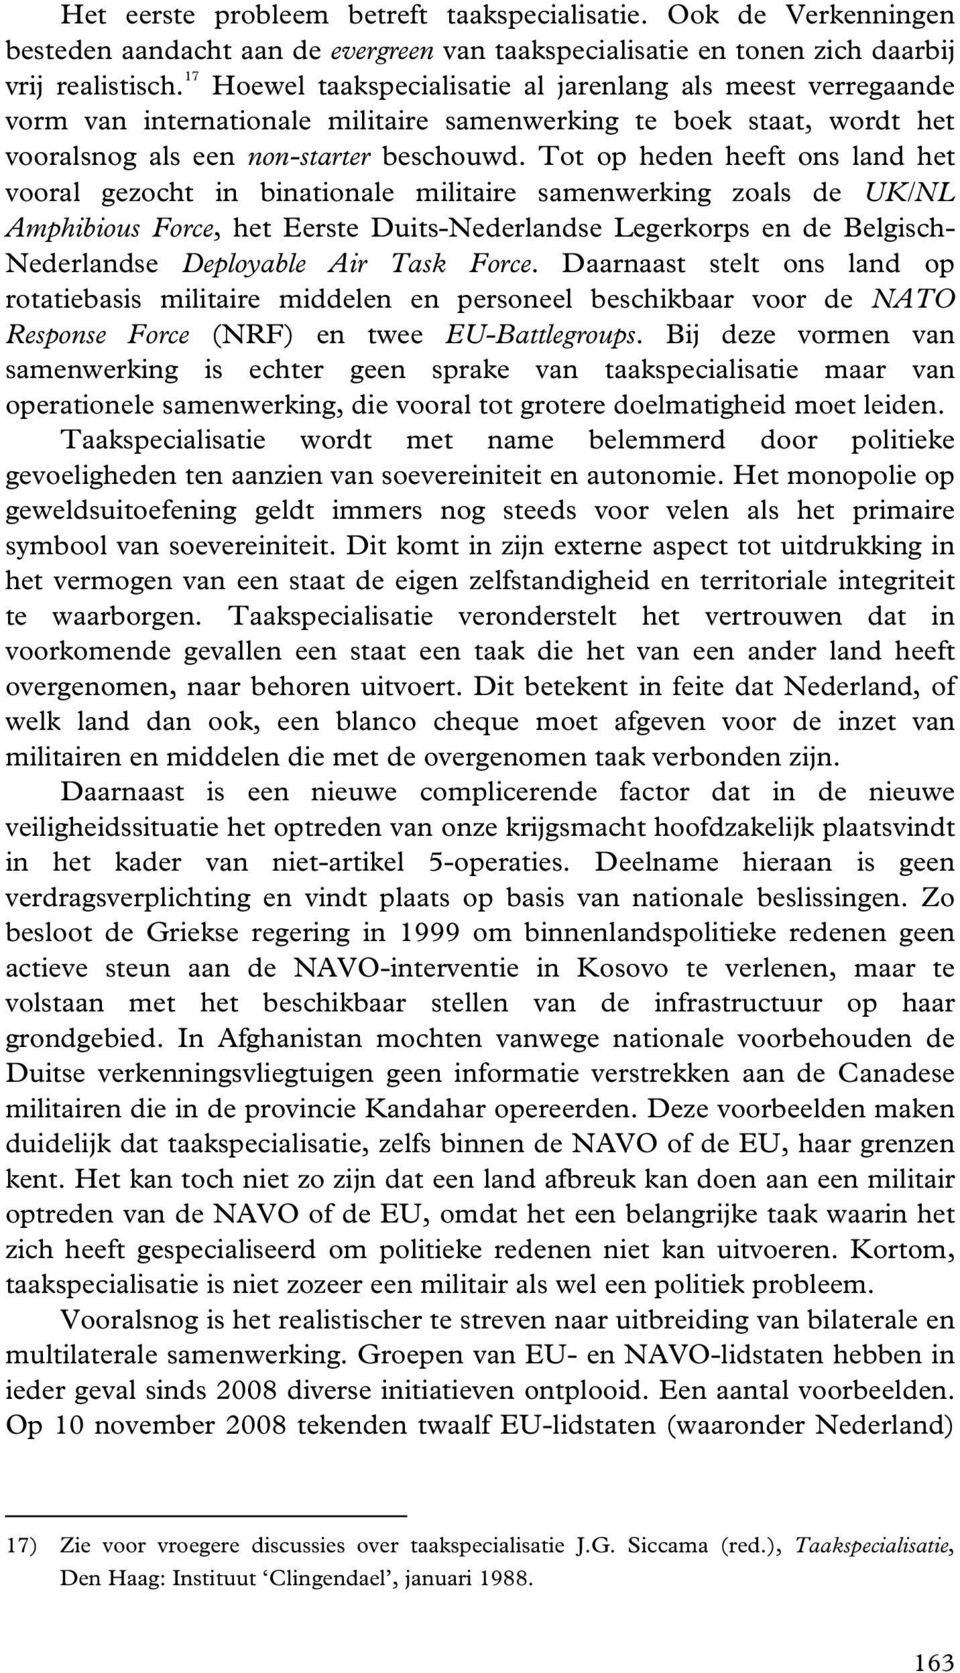 Tot op heden heeft ons land het vooral gezocht in binationale militaire samenwerking zoals de UK/NL Amphibious Force, het Eerste Duits-Nederlandse Legerkorps en de Belgisch- Nederlandse Deployable